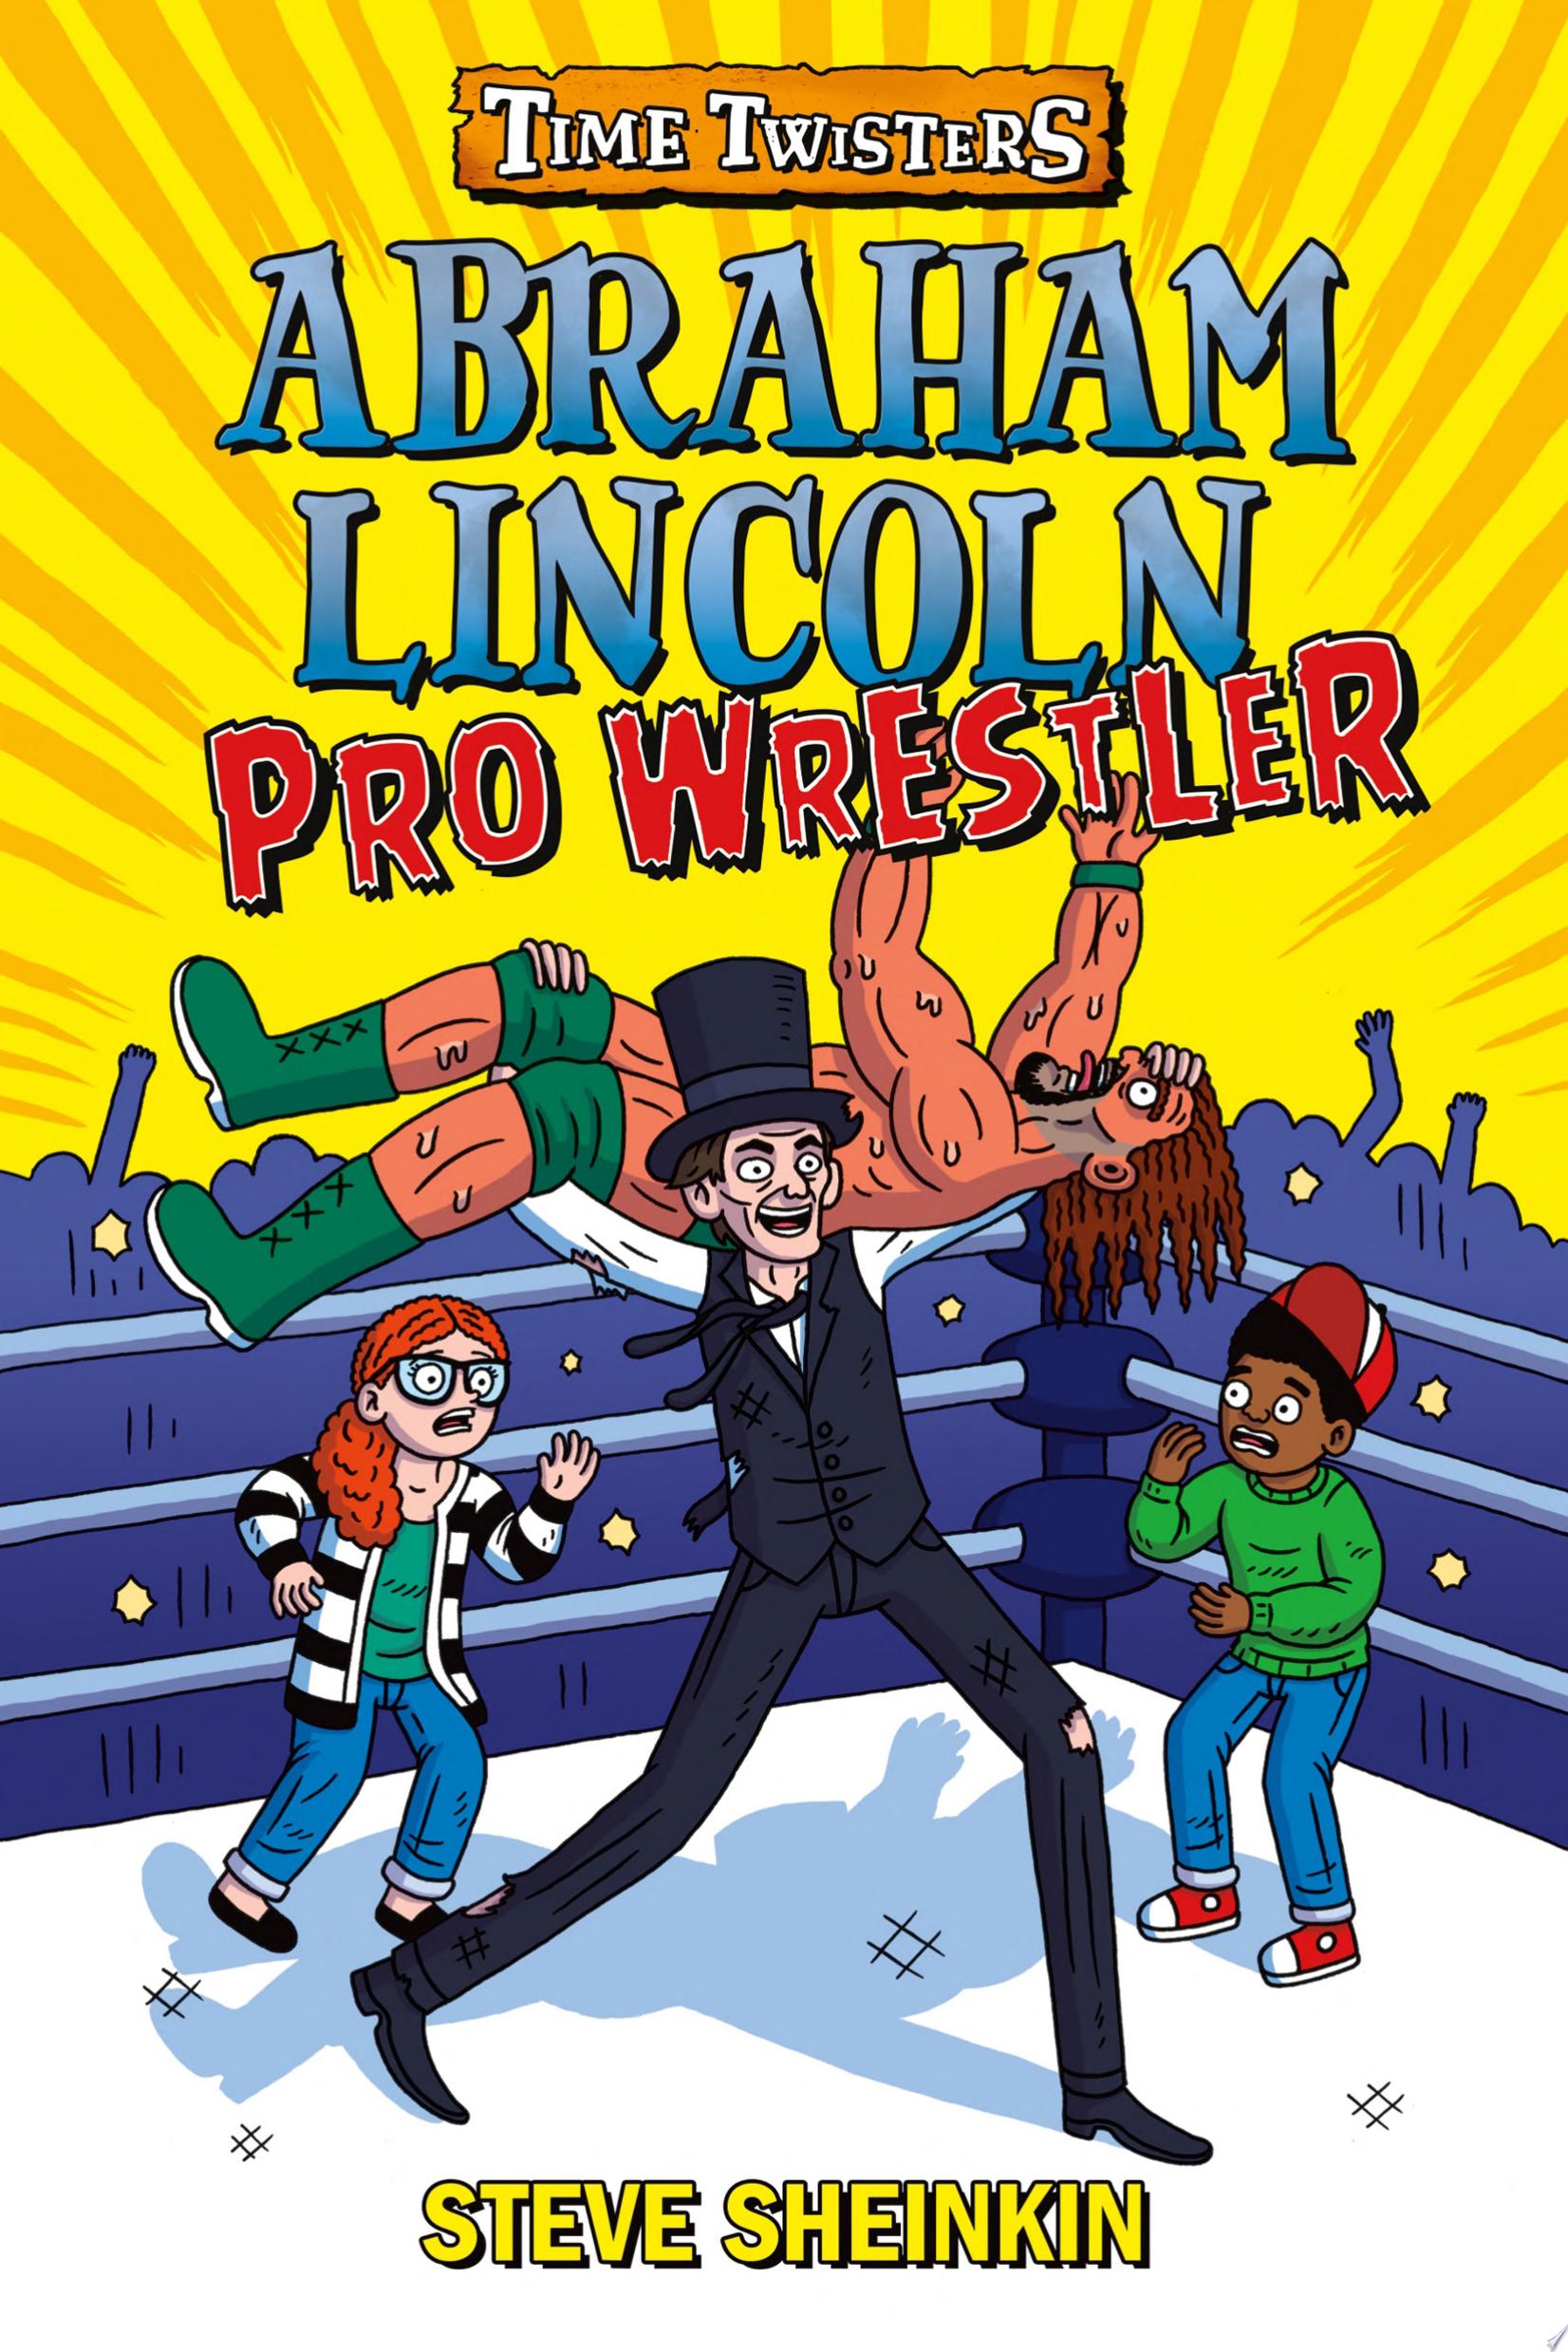 Image for "Abraham Lincoln, Pro Wrestler"